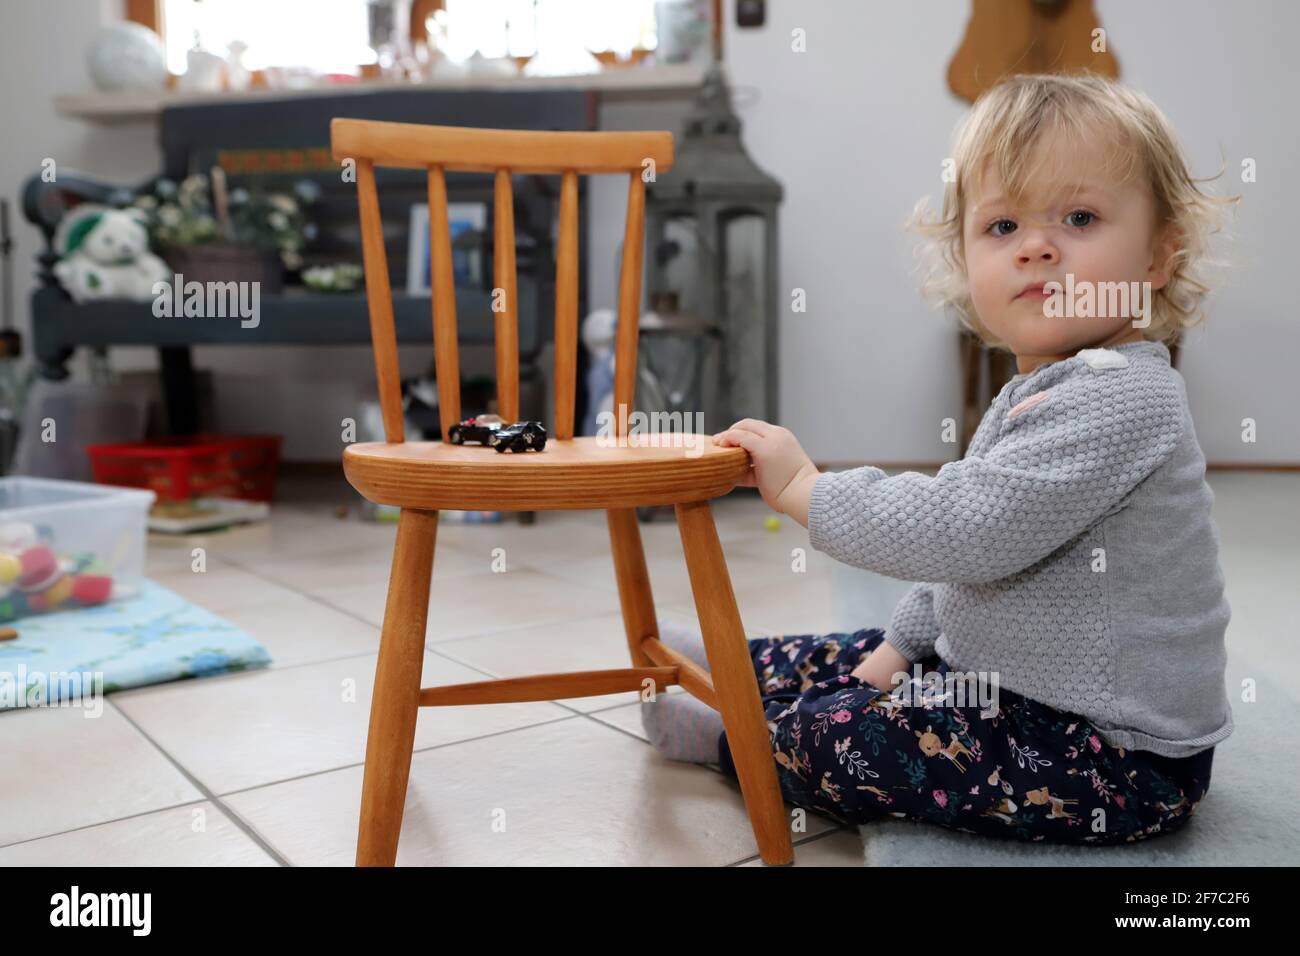 kleines Mädchen sitzt im Wohnzimmer auf dem Boden neben einem Kinderstuhl aus Holz -  little girl sits on the floor next to wooden child chair in livi Stock Photo